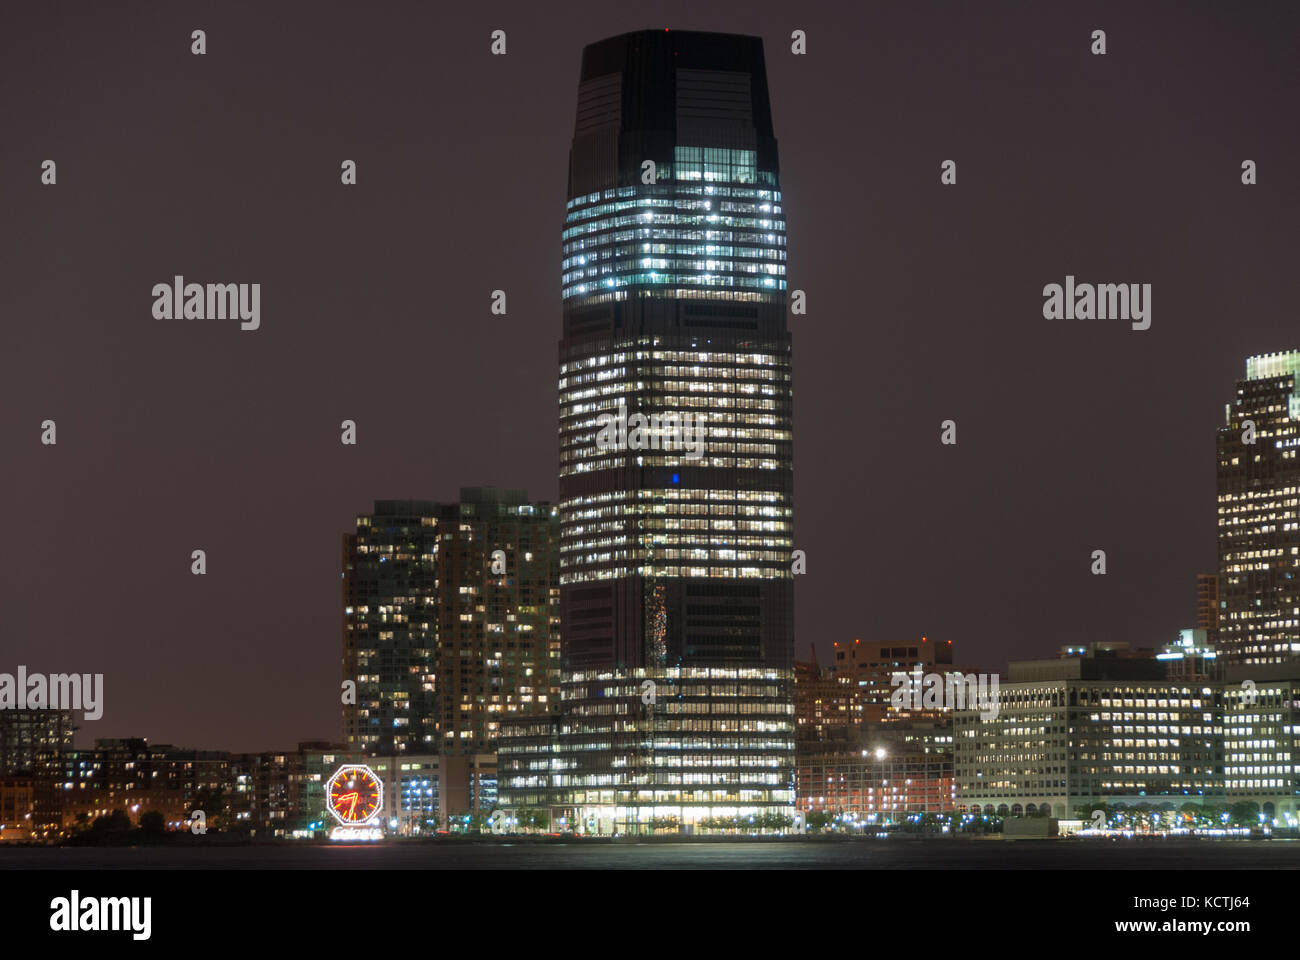 Jersey City, New Jersey - 29. August 2007: Goldman Sachs Tower und der Colgate clock in Jersey City in New Jersey in der Nacht. Stockfoto